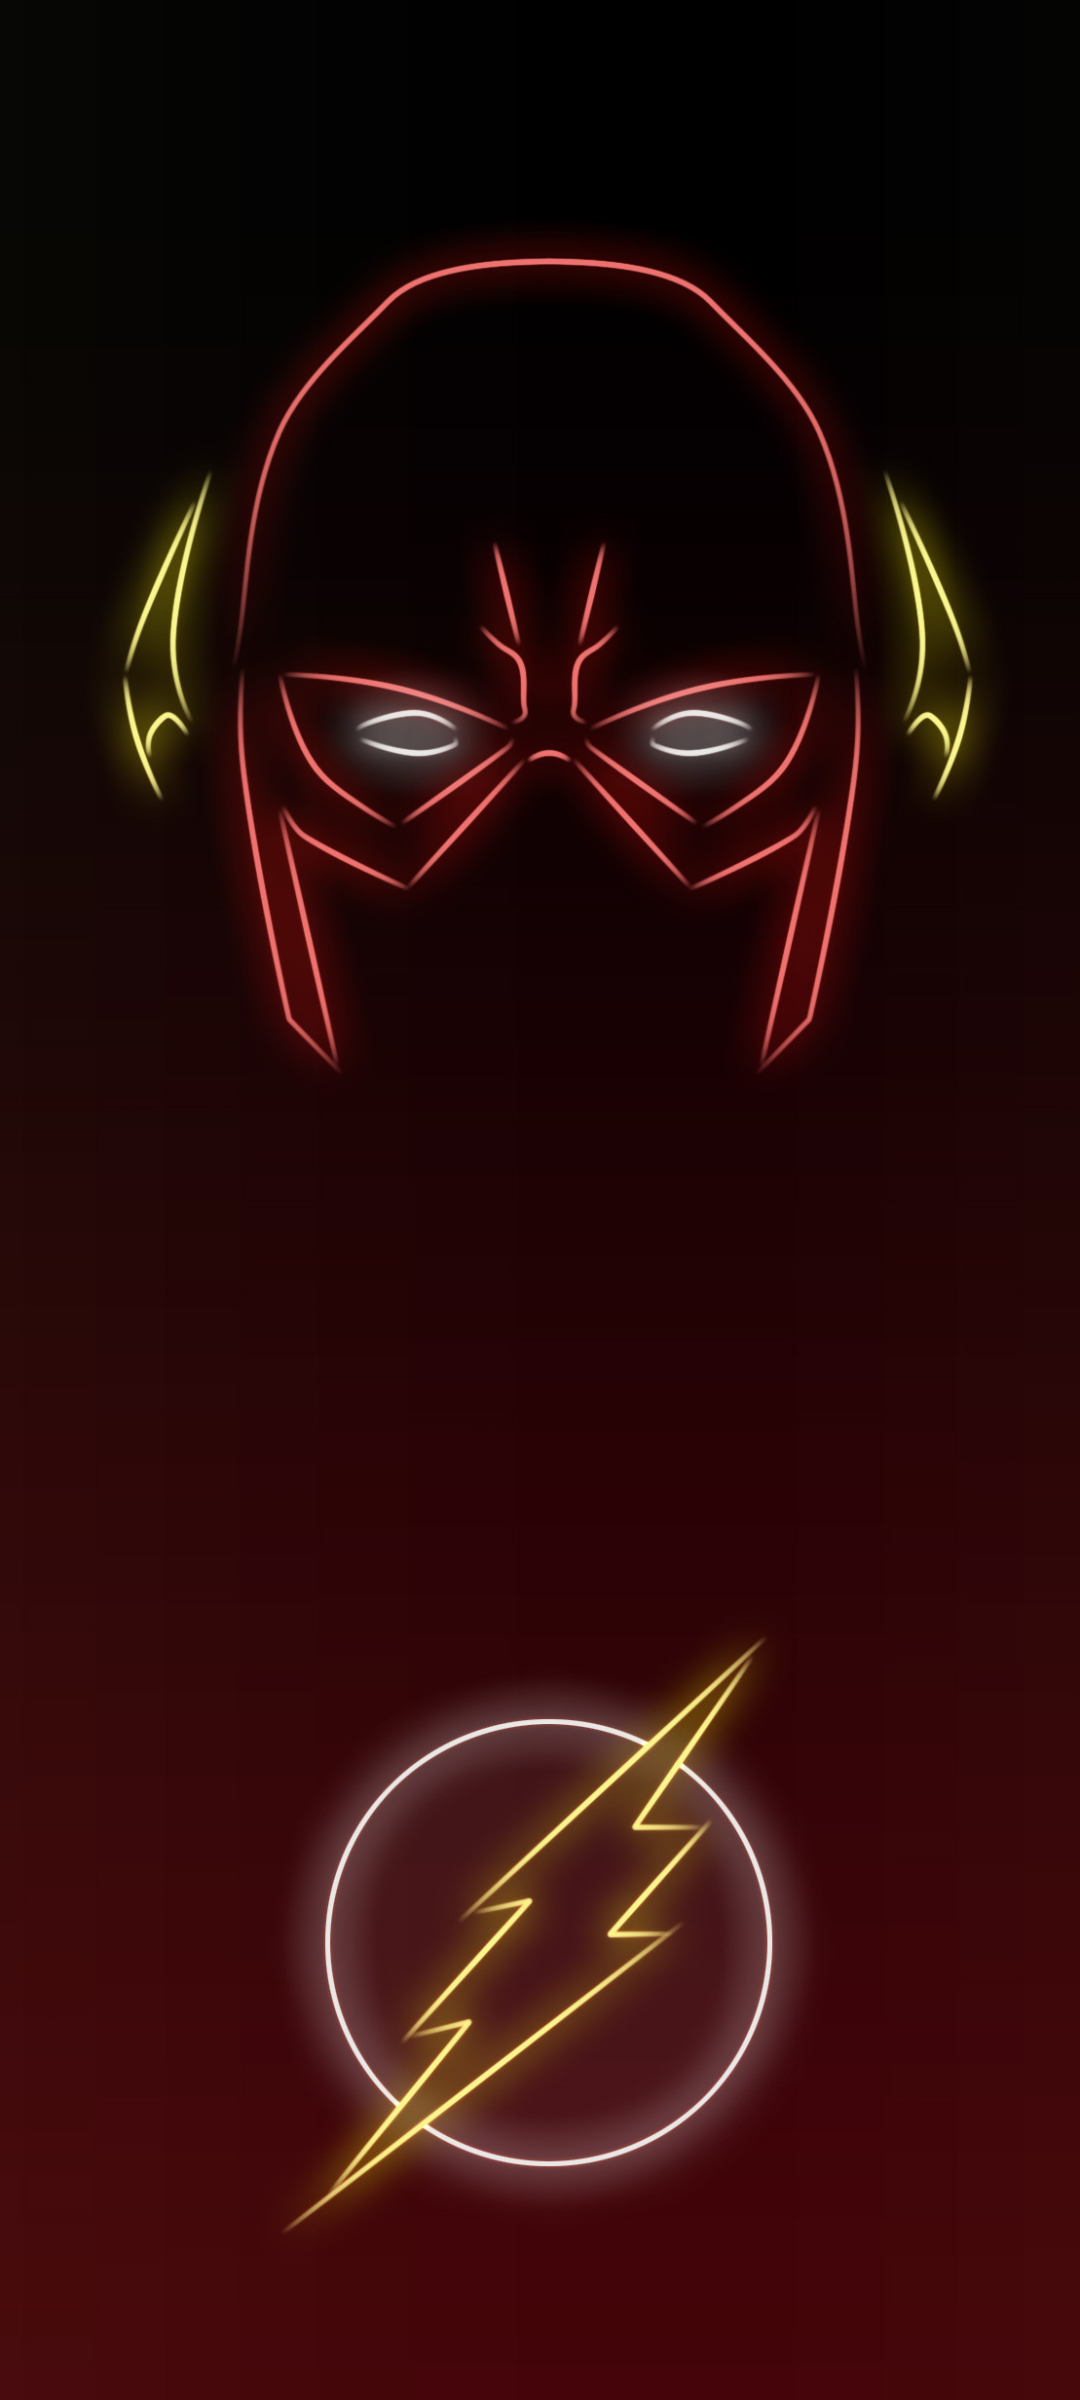 Descarga gratuita de fondo de pantalla para móvil de Destello, Logo, Historietas, Dc Comics, The Flash.